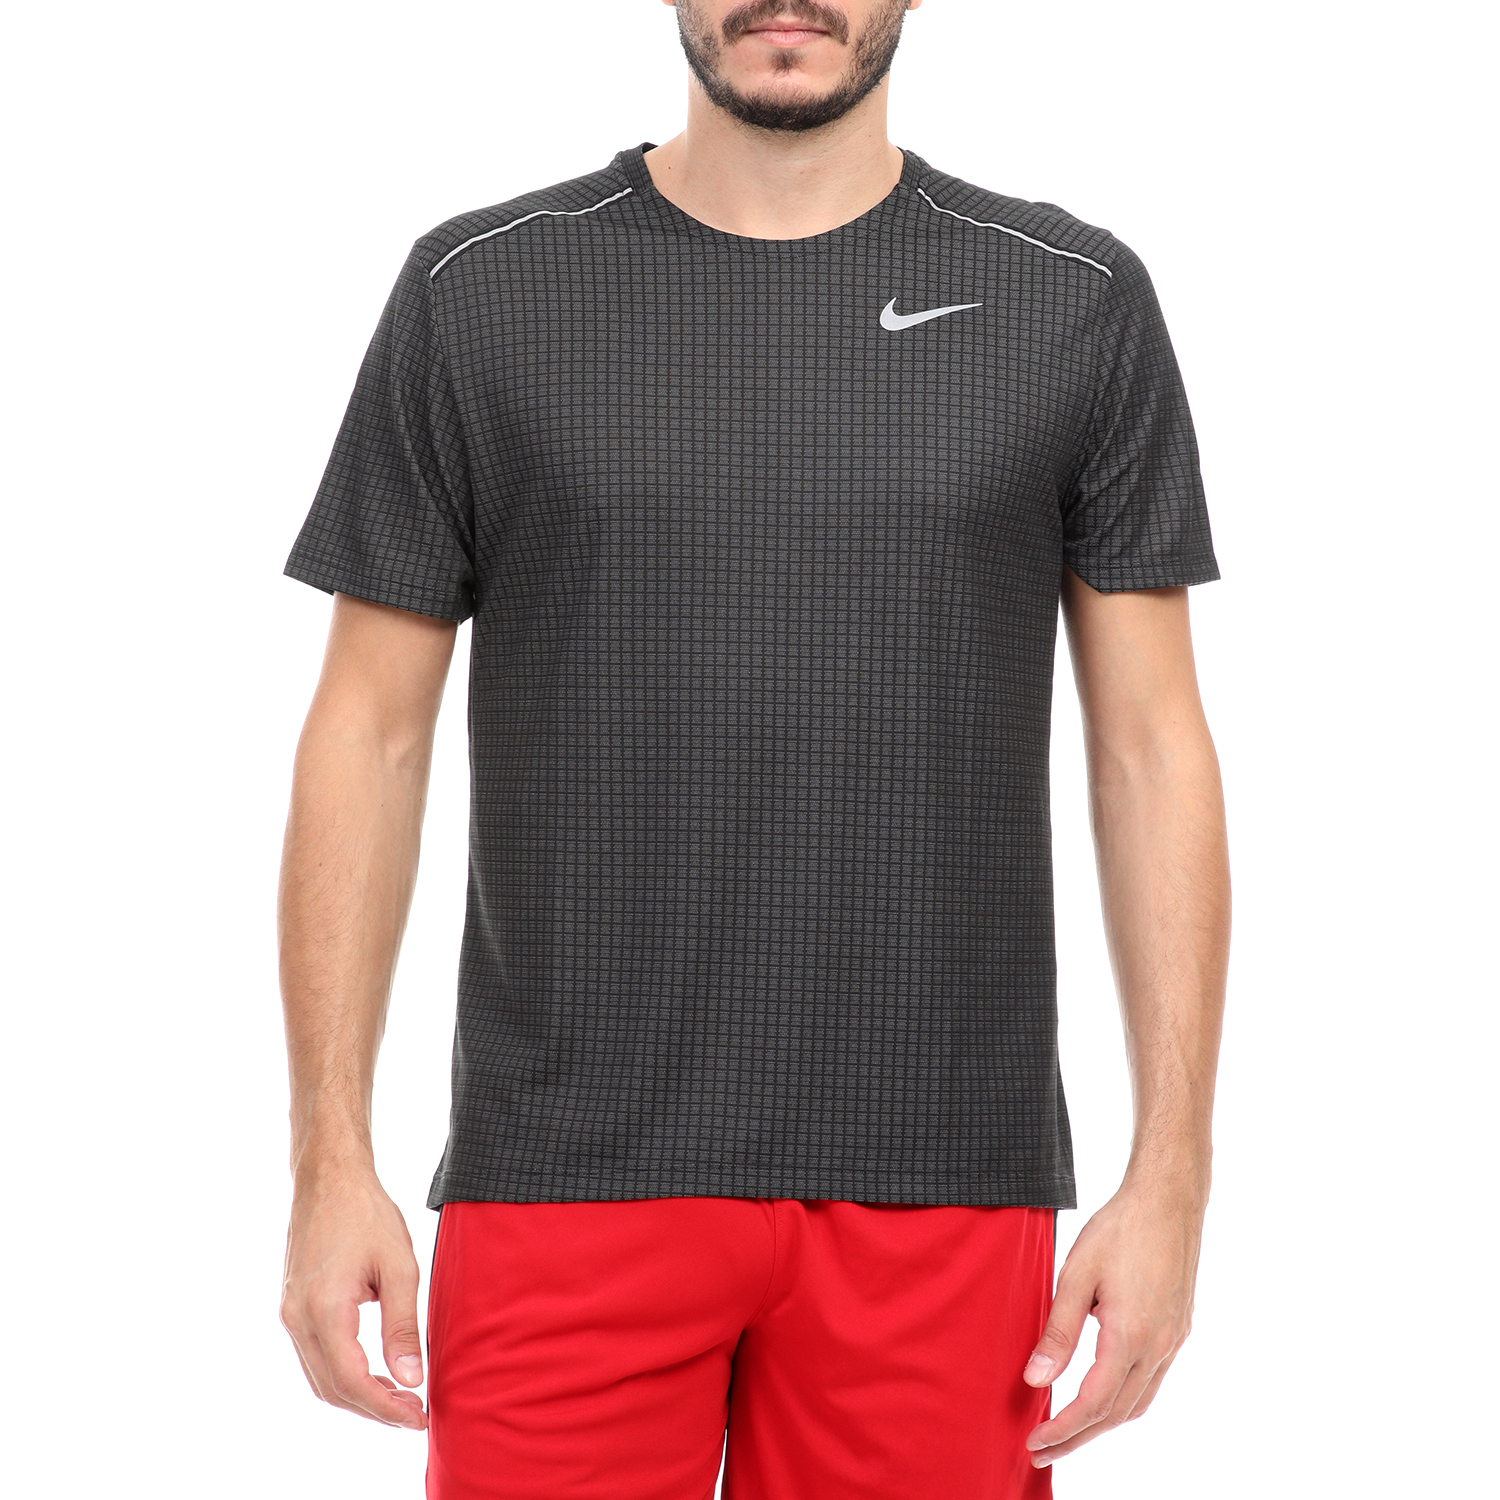 Ανδρικά/Ρούχα/Αθλητικά/T-shirt NIKE - Ανδρικό t-shirt Nike NK MILER TECH μαύρο